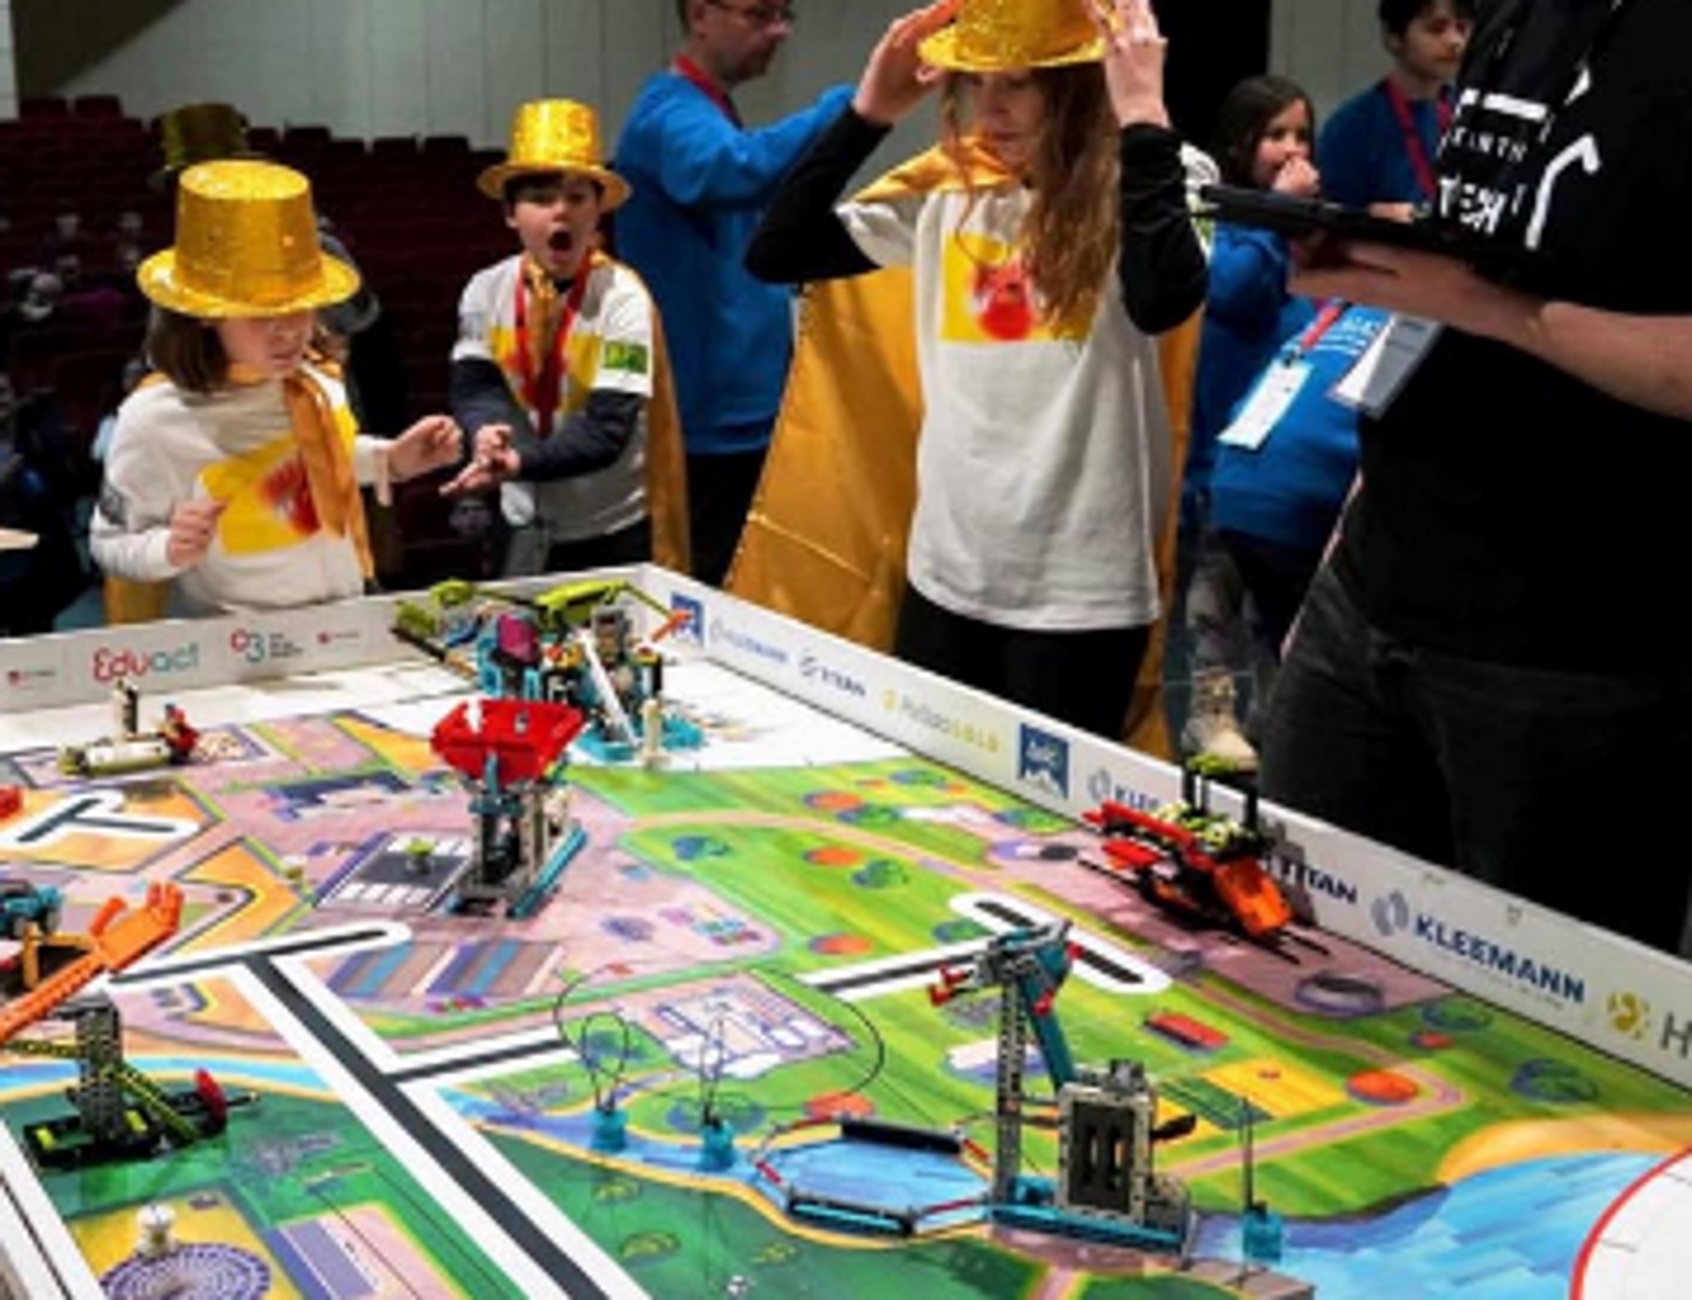 Ξάνθη: Όταν το παιχνίδι με τα δημοφιλή τουβλάκια της Lego γίνεται καινοτομία και επιστήμη